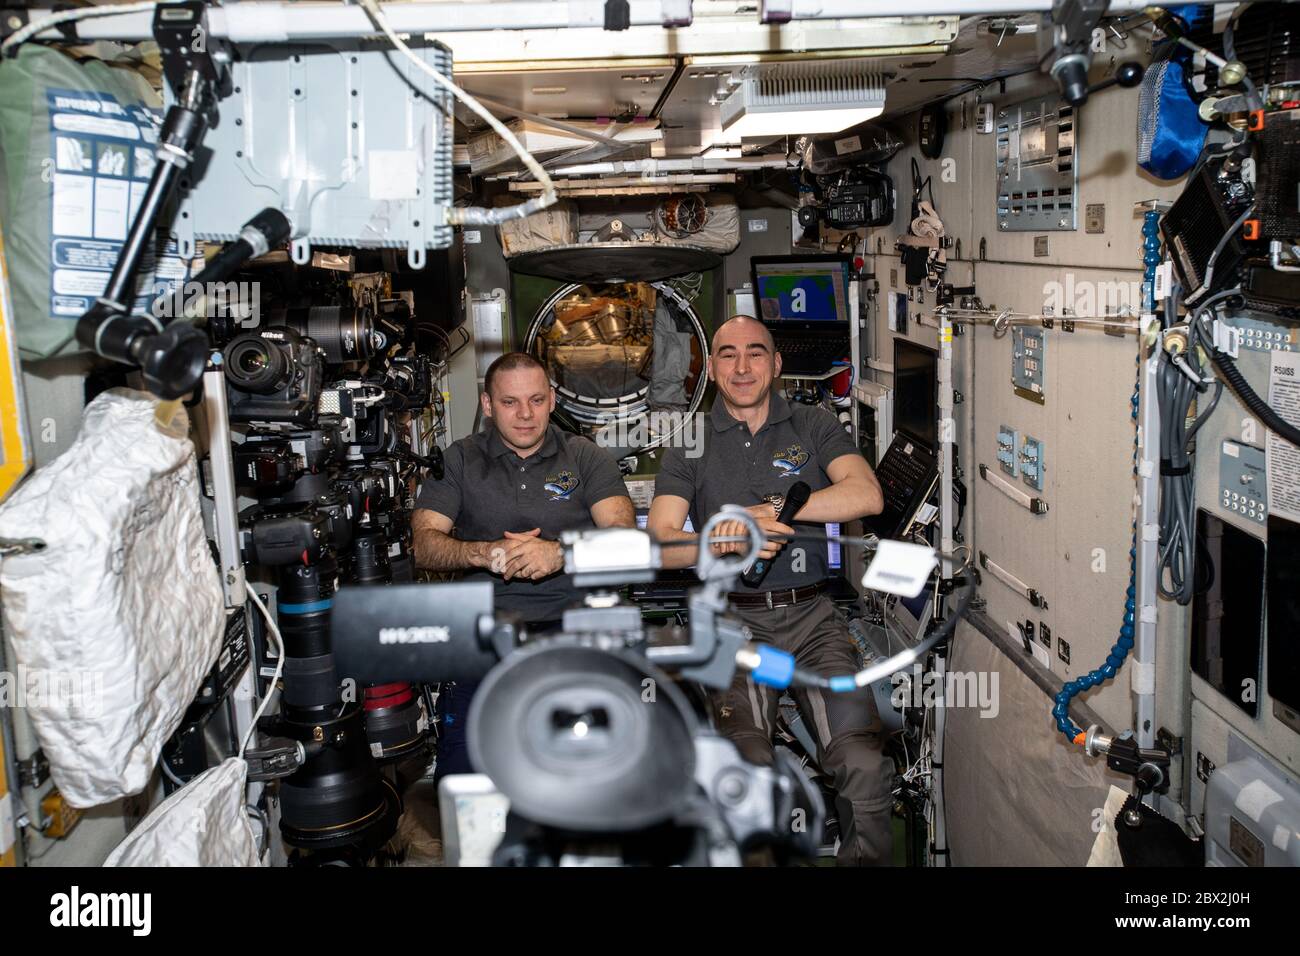 Roskosmos Kosmonauten und Expedition 63 die Flugingenieure Ivan Vagner, links, und Anatoly Ivanishin dokumentieren ein öffentliches Ereignis für russische Medien vom Internationalen Raumstation-Servicemodul Zwesda vom 14. Mai 2020 in Earth Orbit. Stockfoto